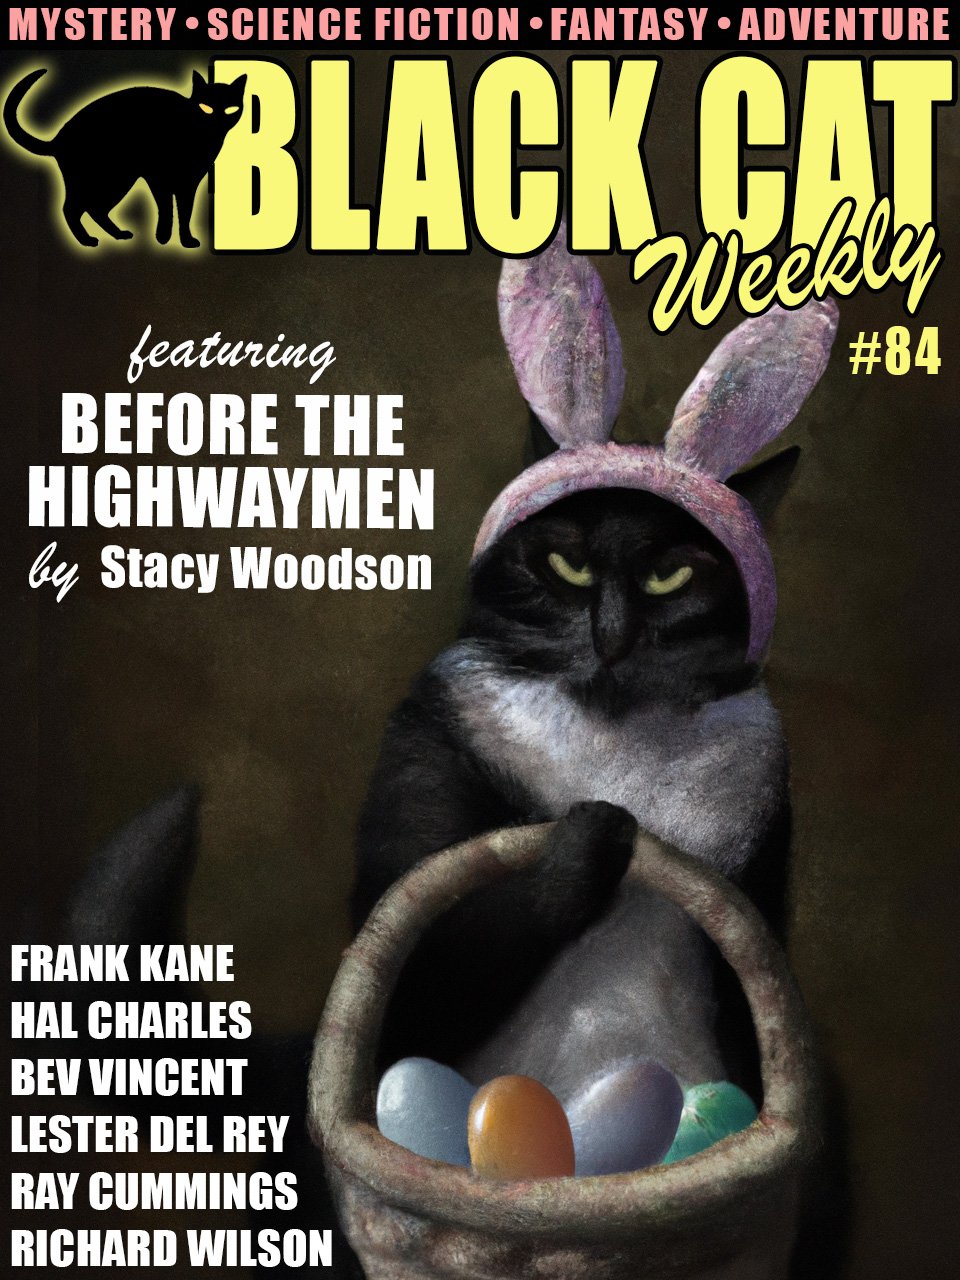 Black Cate Weekly